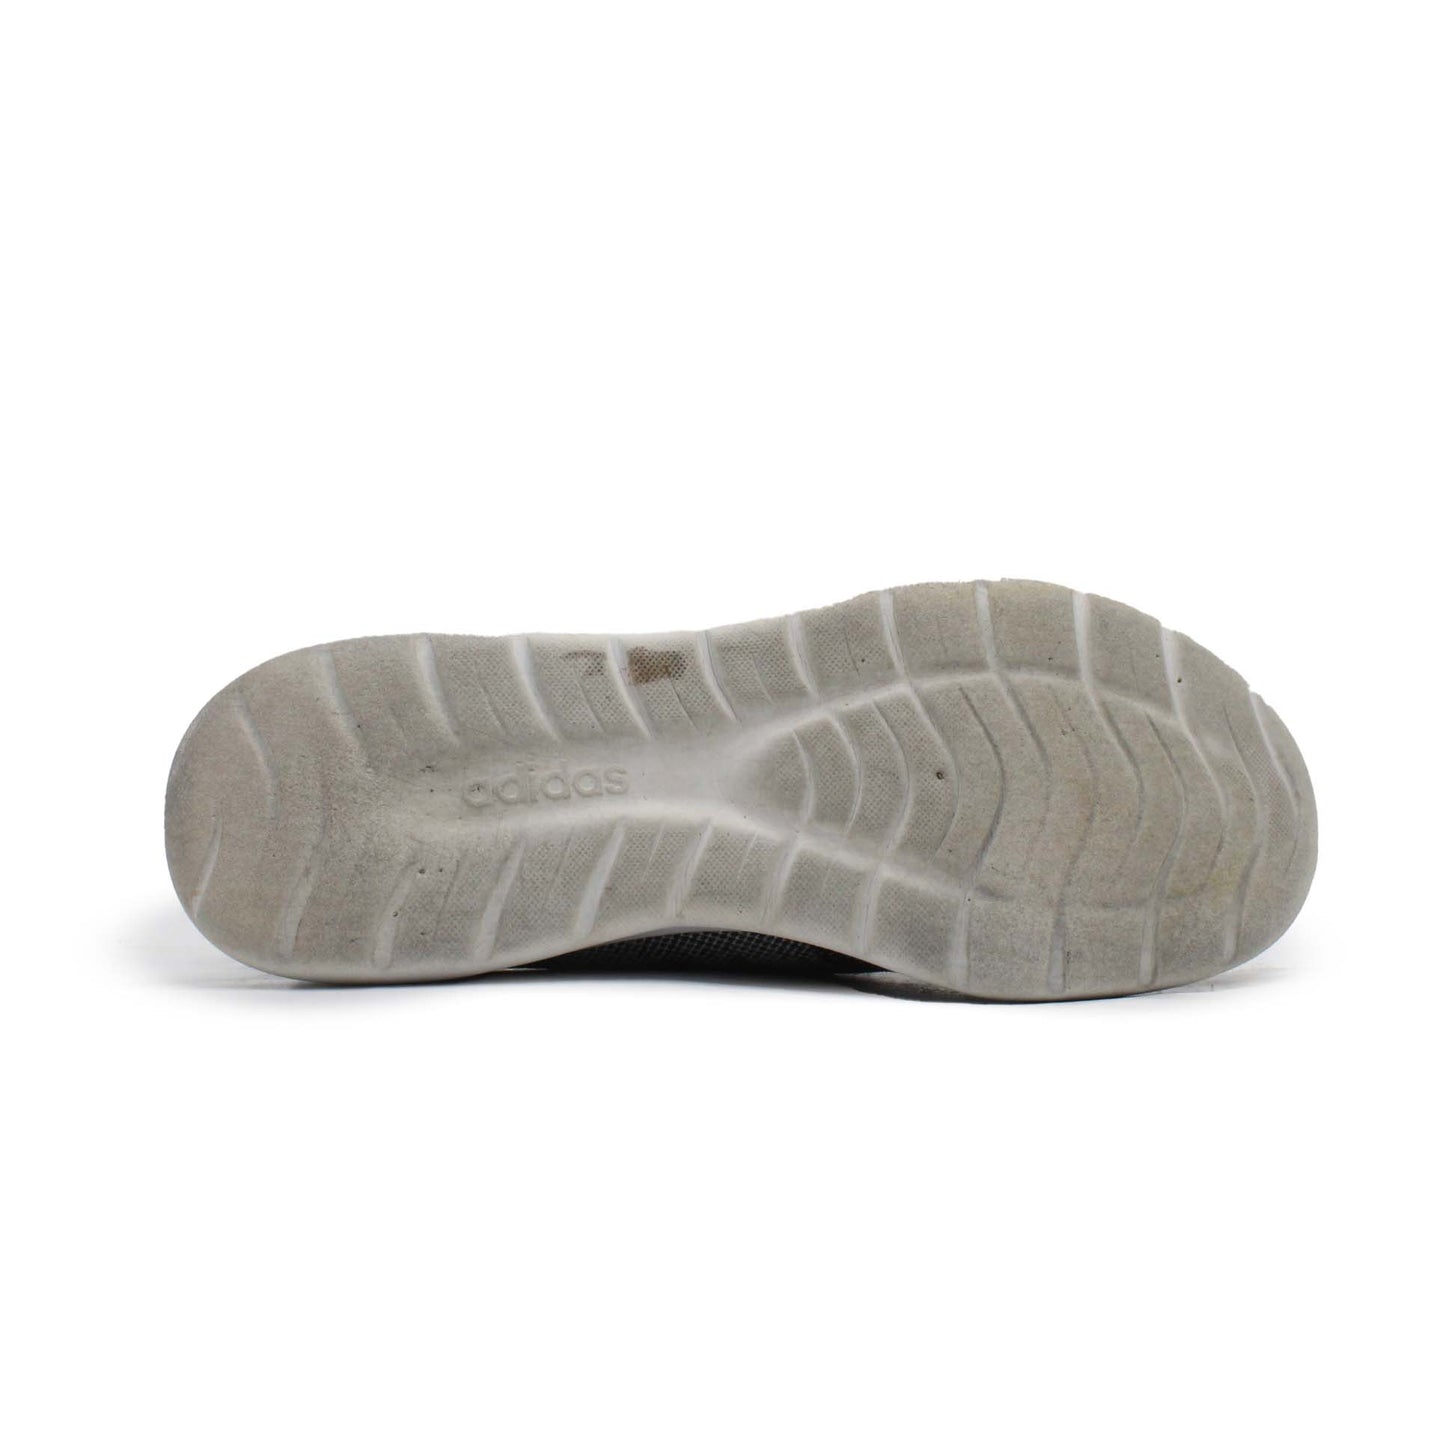 Adidas Cloudfoam Pure 2.0 Running Shoe